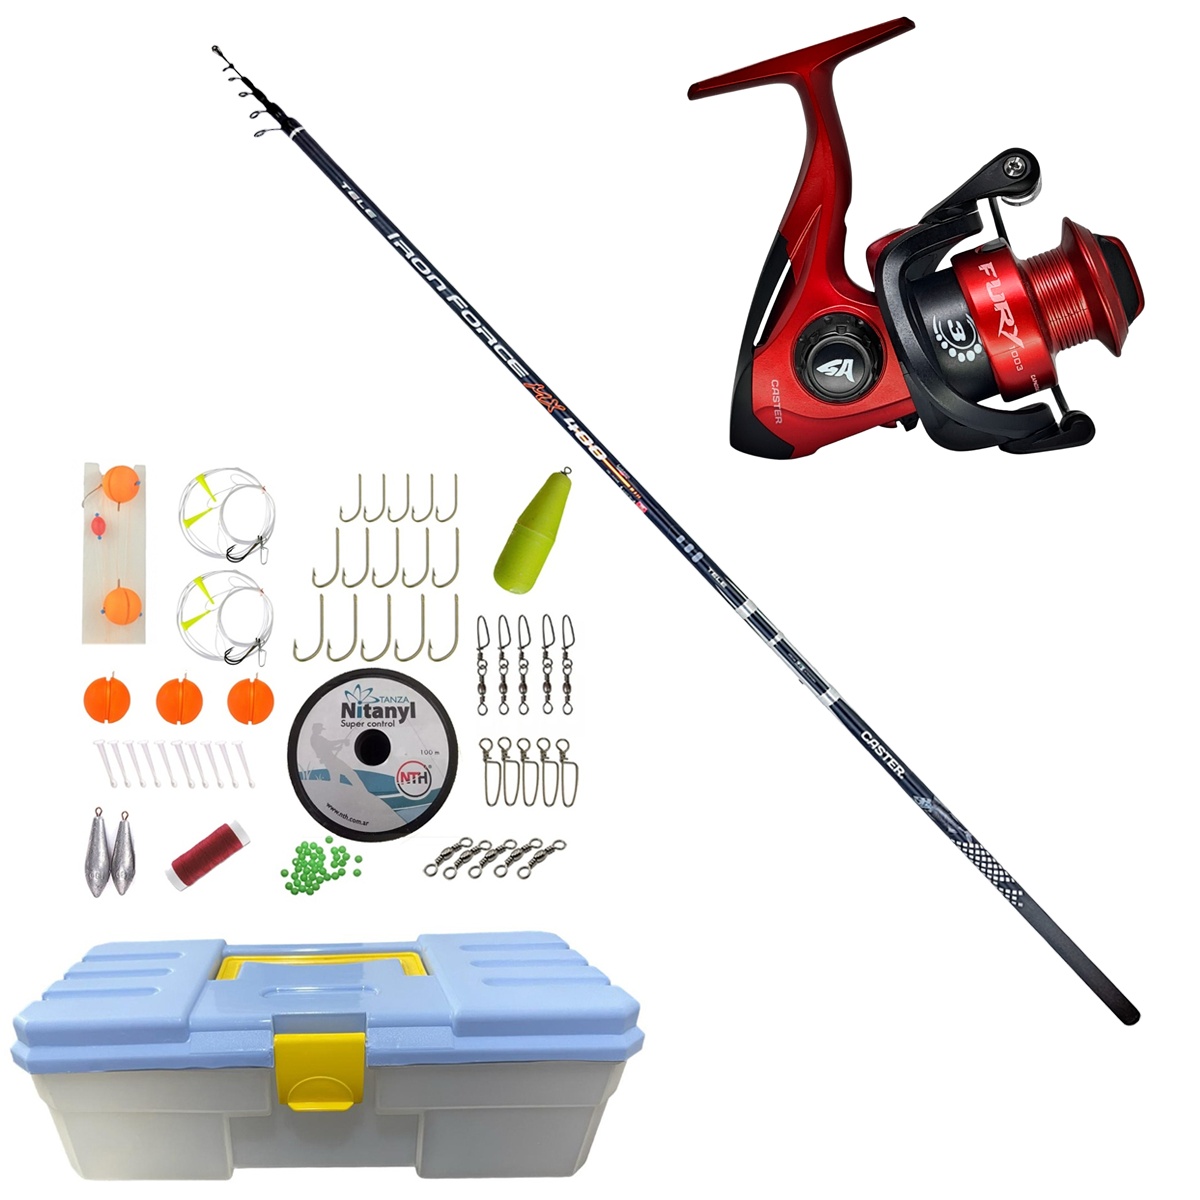 Super Kit Pesca Caña Pejerrey 4m + Reel + Accesorios + Caja - EL NAUFRAGO  PESCA - Productos para pesca deportiva